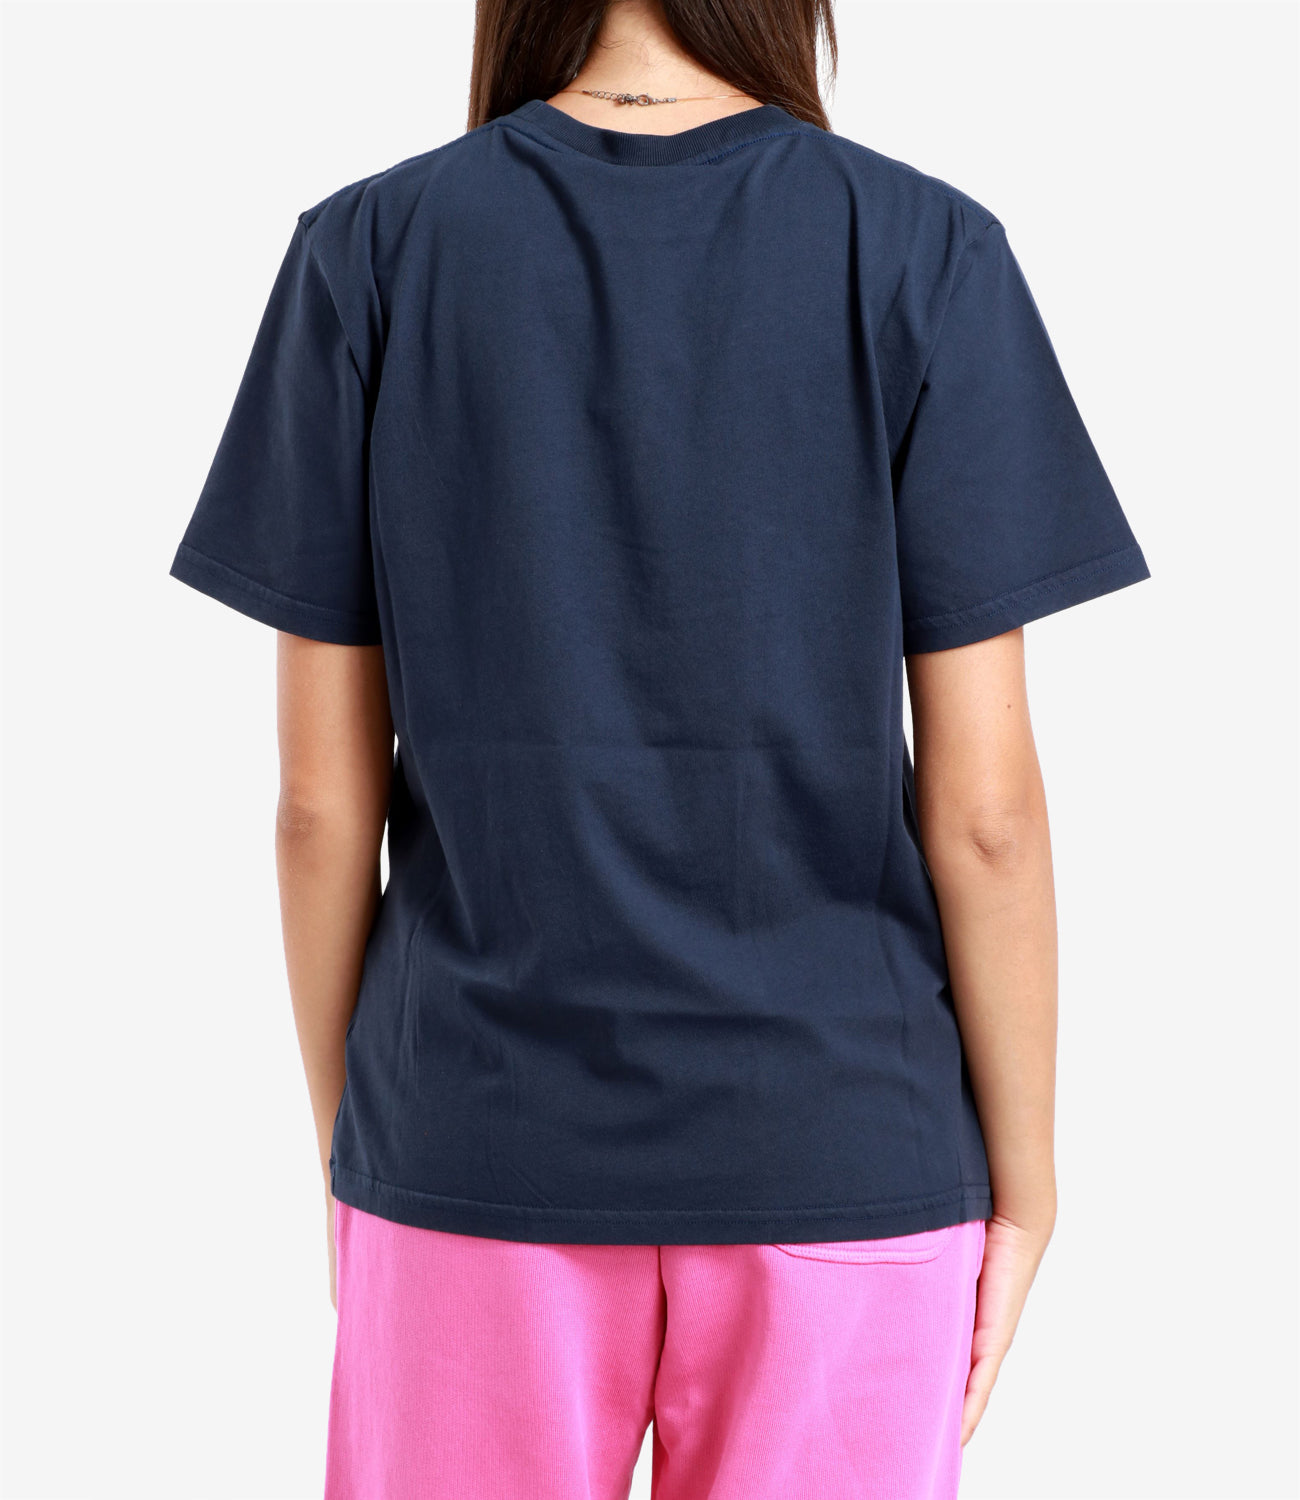 Autry | T-Shirt Blu